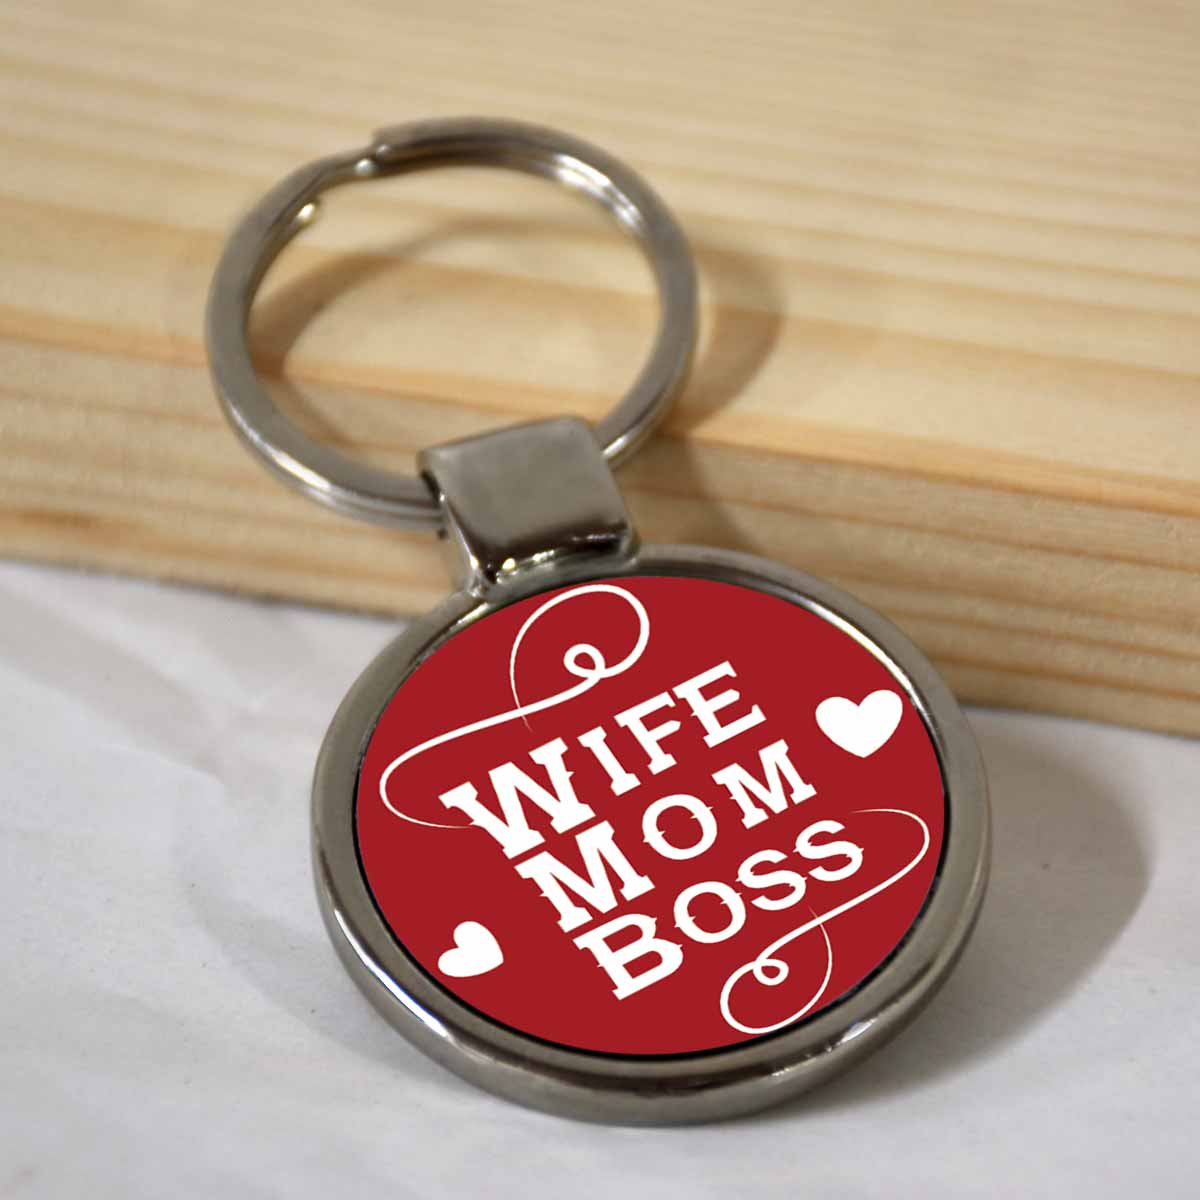 Wife Mom Boss Round Metal Keychain-1